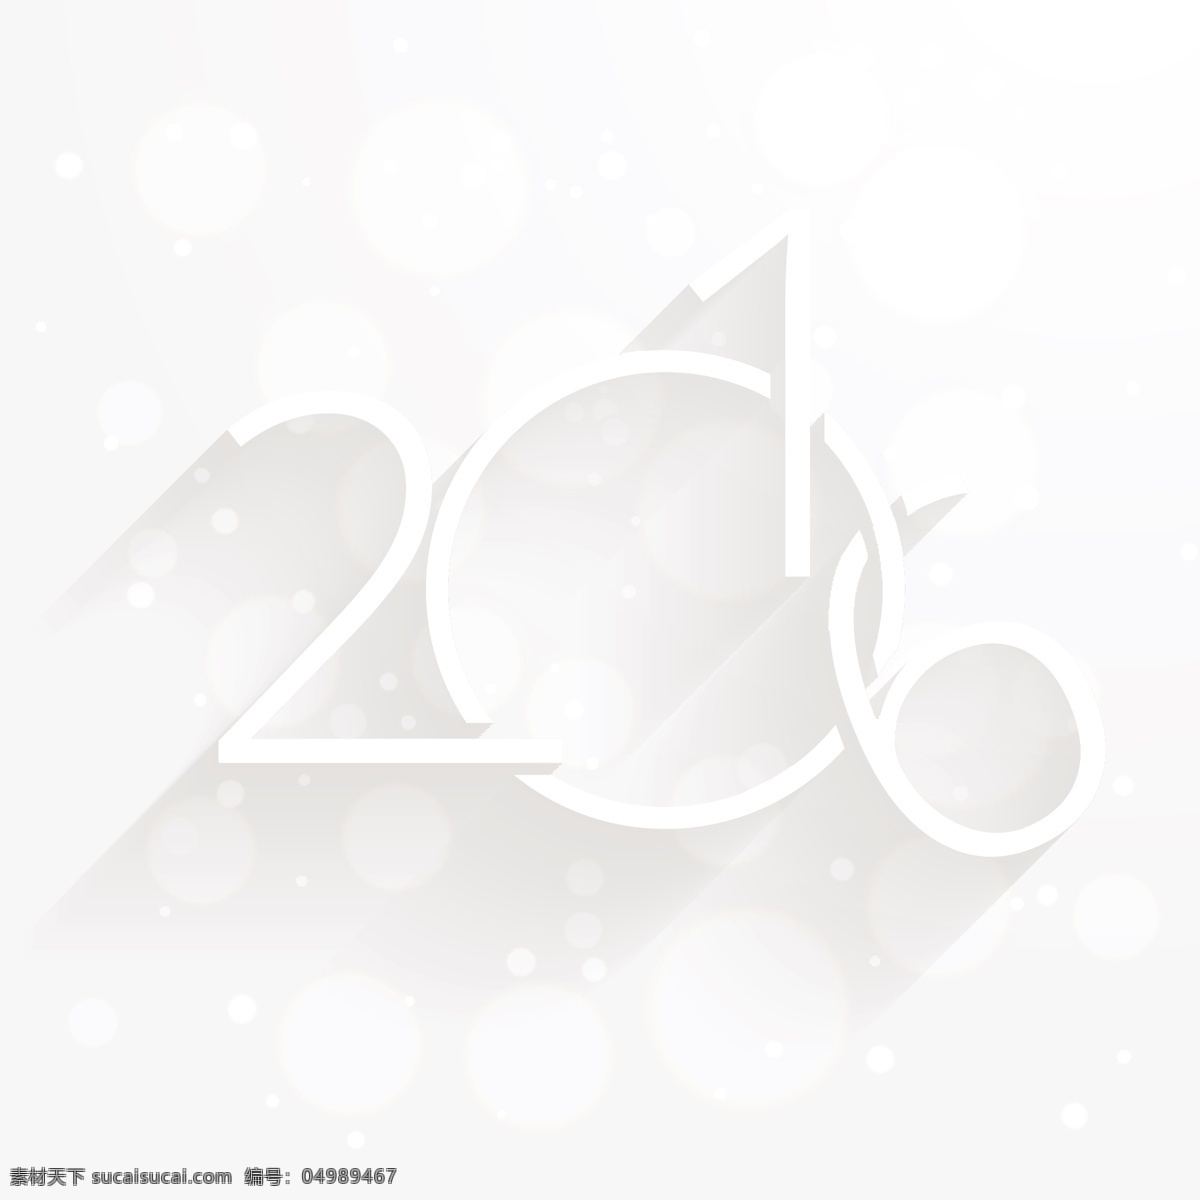 白色 散 景 新年贺卡 背景 宣传册 海报 卡片 新的一年 新年快乐 冬天快乐 壁纸 庆典 新事件 节日 2016 白色的背景 背景虚化 清洁 年 节日快乐